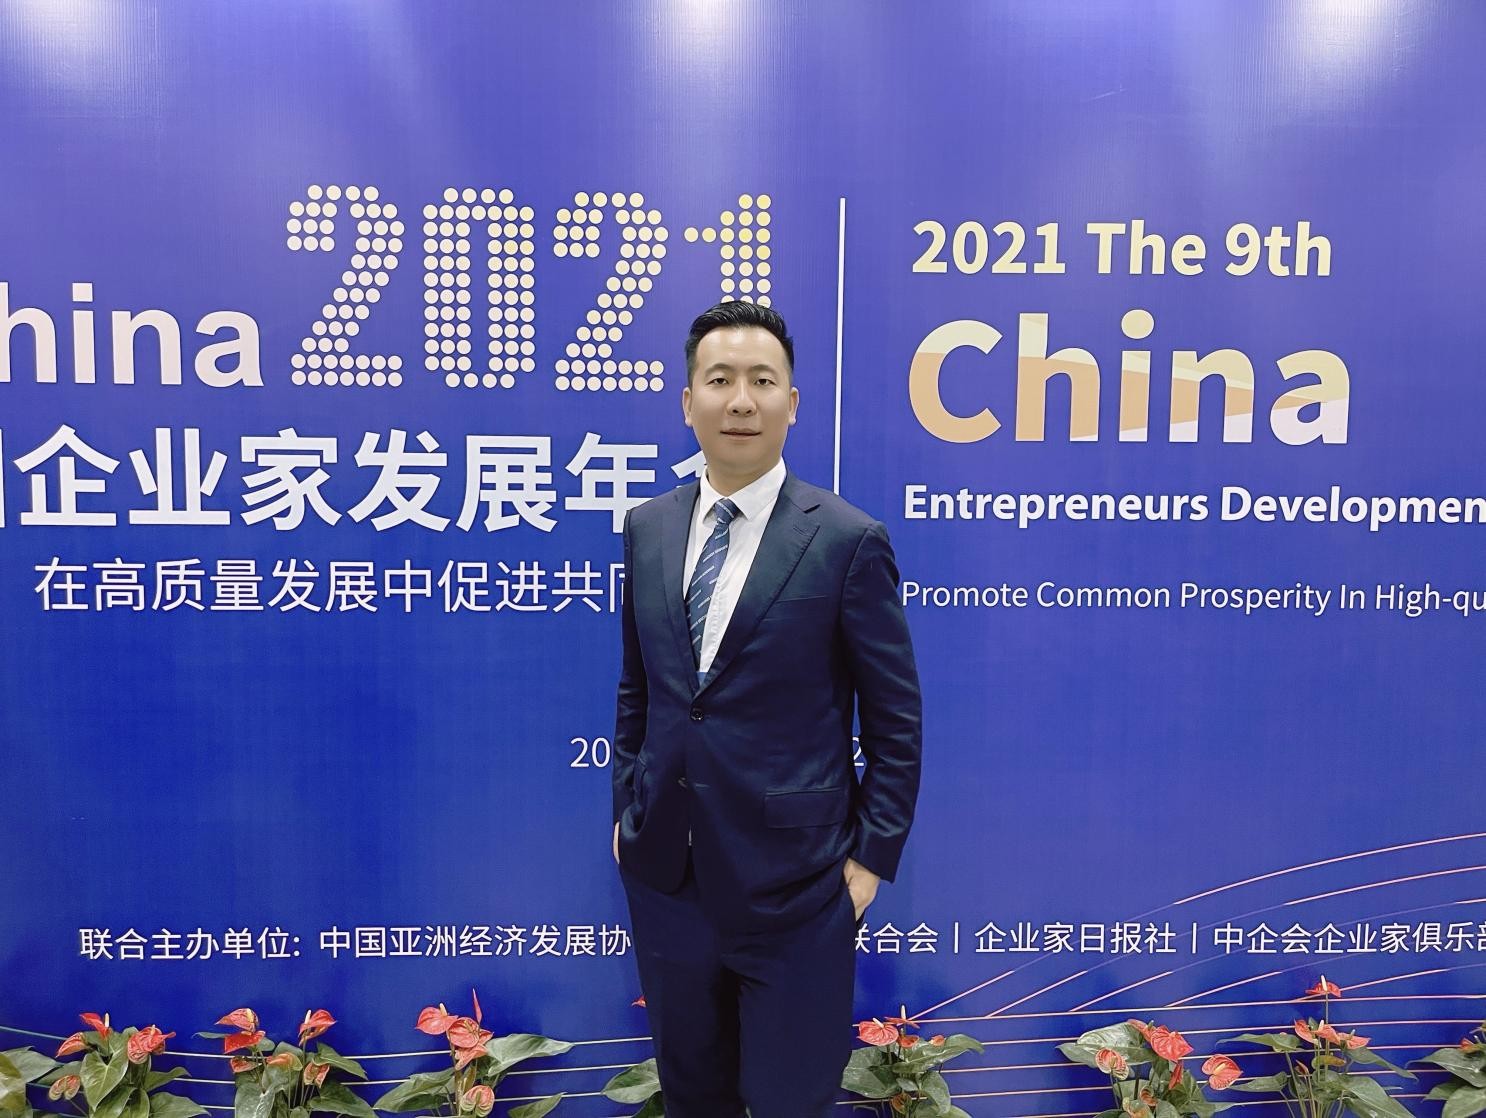 百億企業家王統藝出席中國企業家年會與玻璃大王曹德旺探討民營企業發展方向創新